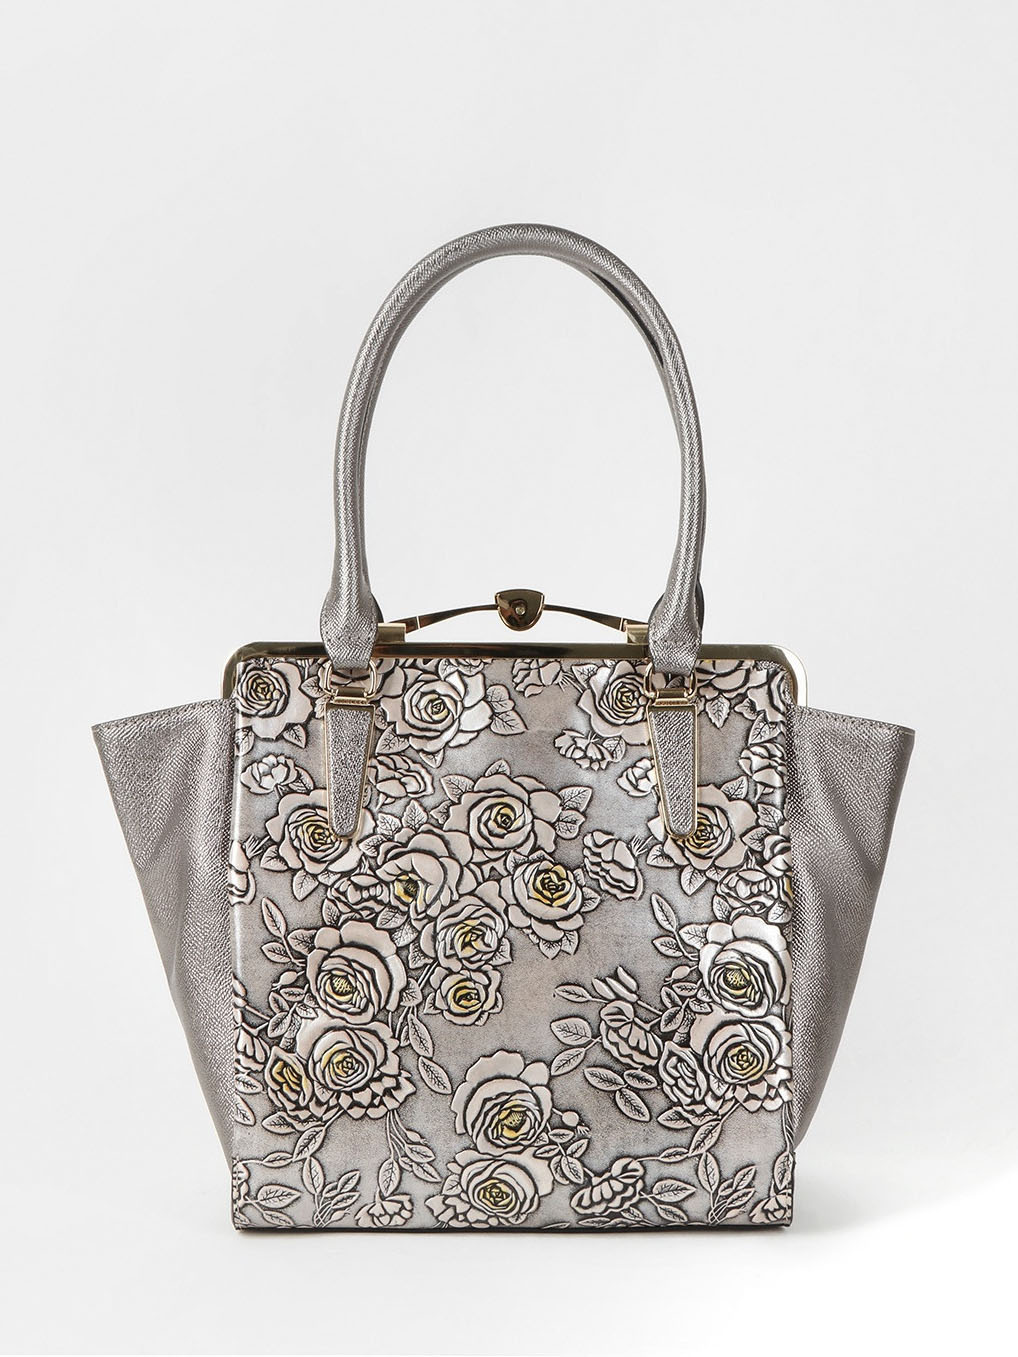 Фото Трапециевидная сумка-тоут из серебристой кожи с саквожяным замком Классические сумки